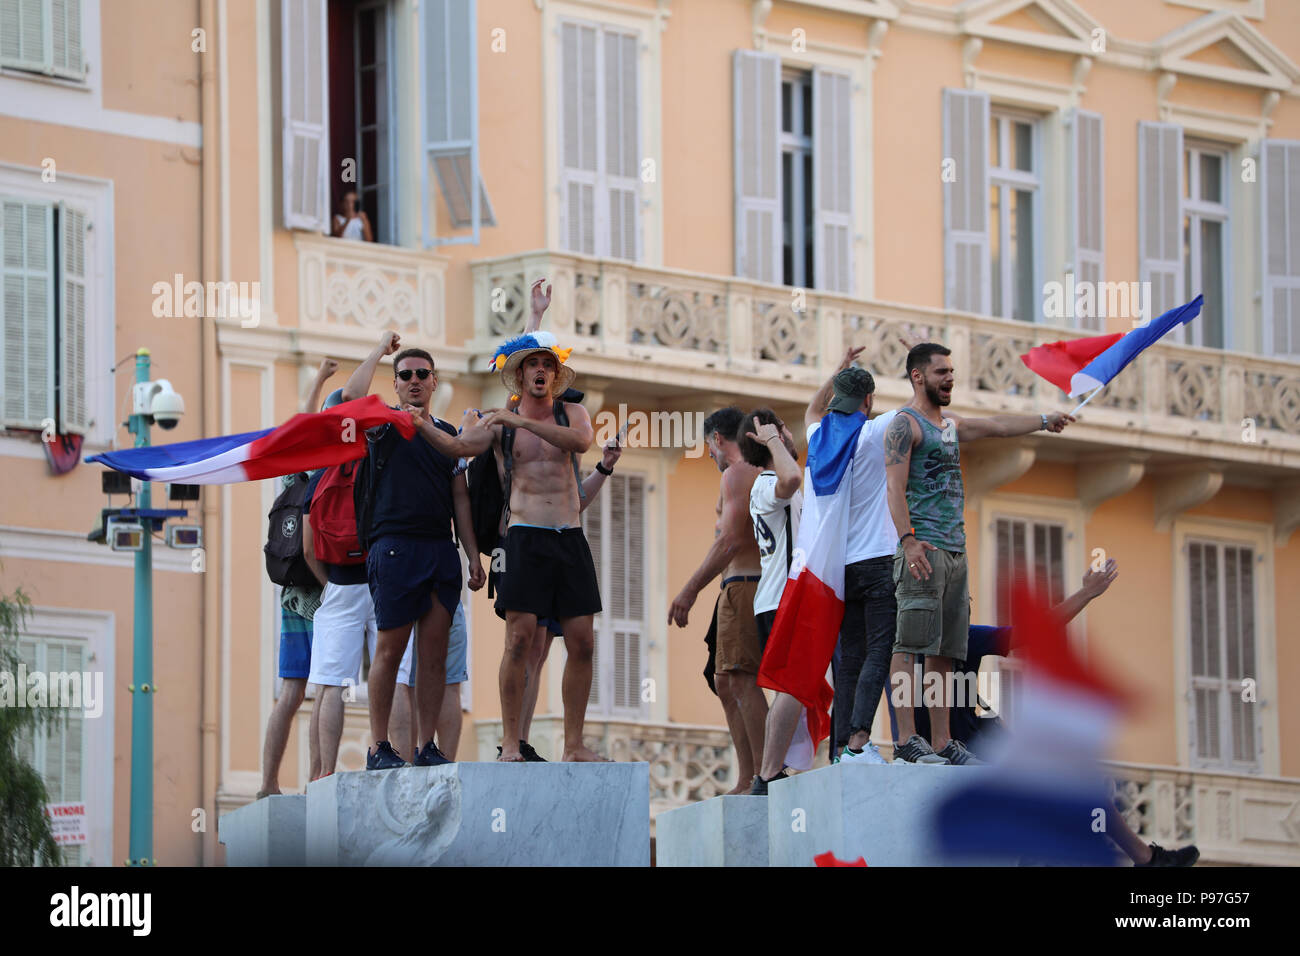 Menton, Francia - 15 Luglio 2018: 2018 FIFA World Cup Russia : Francia sostenitori celebrare in Menton dopo aver vinto la Coppa del Mondo con 4-2 vittoria sulla Croazia Foto Stock